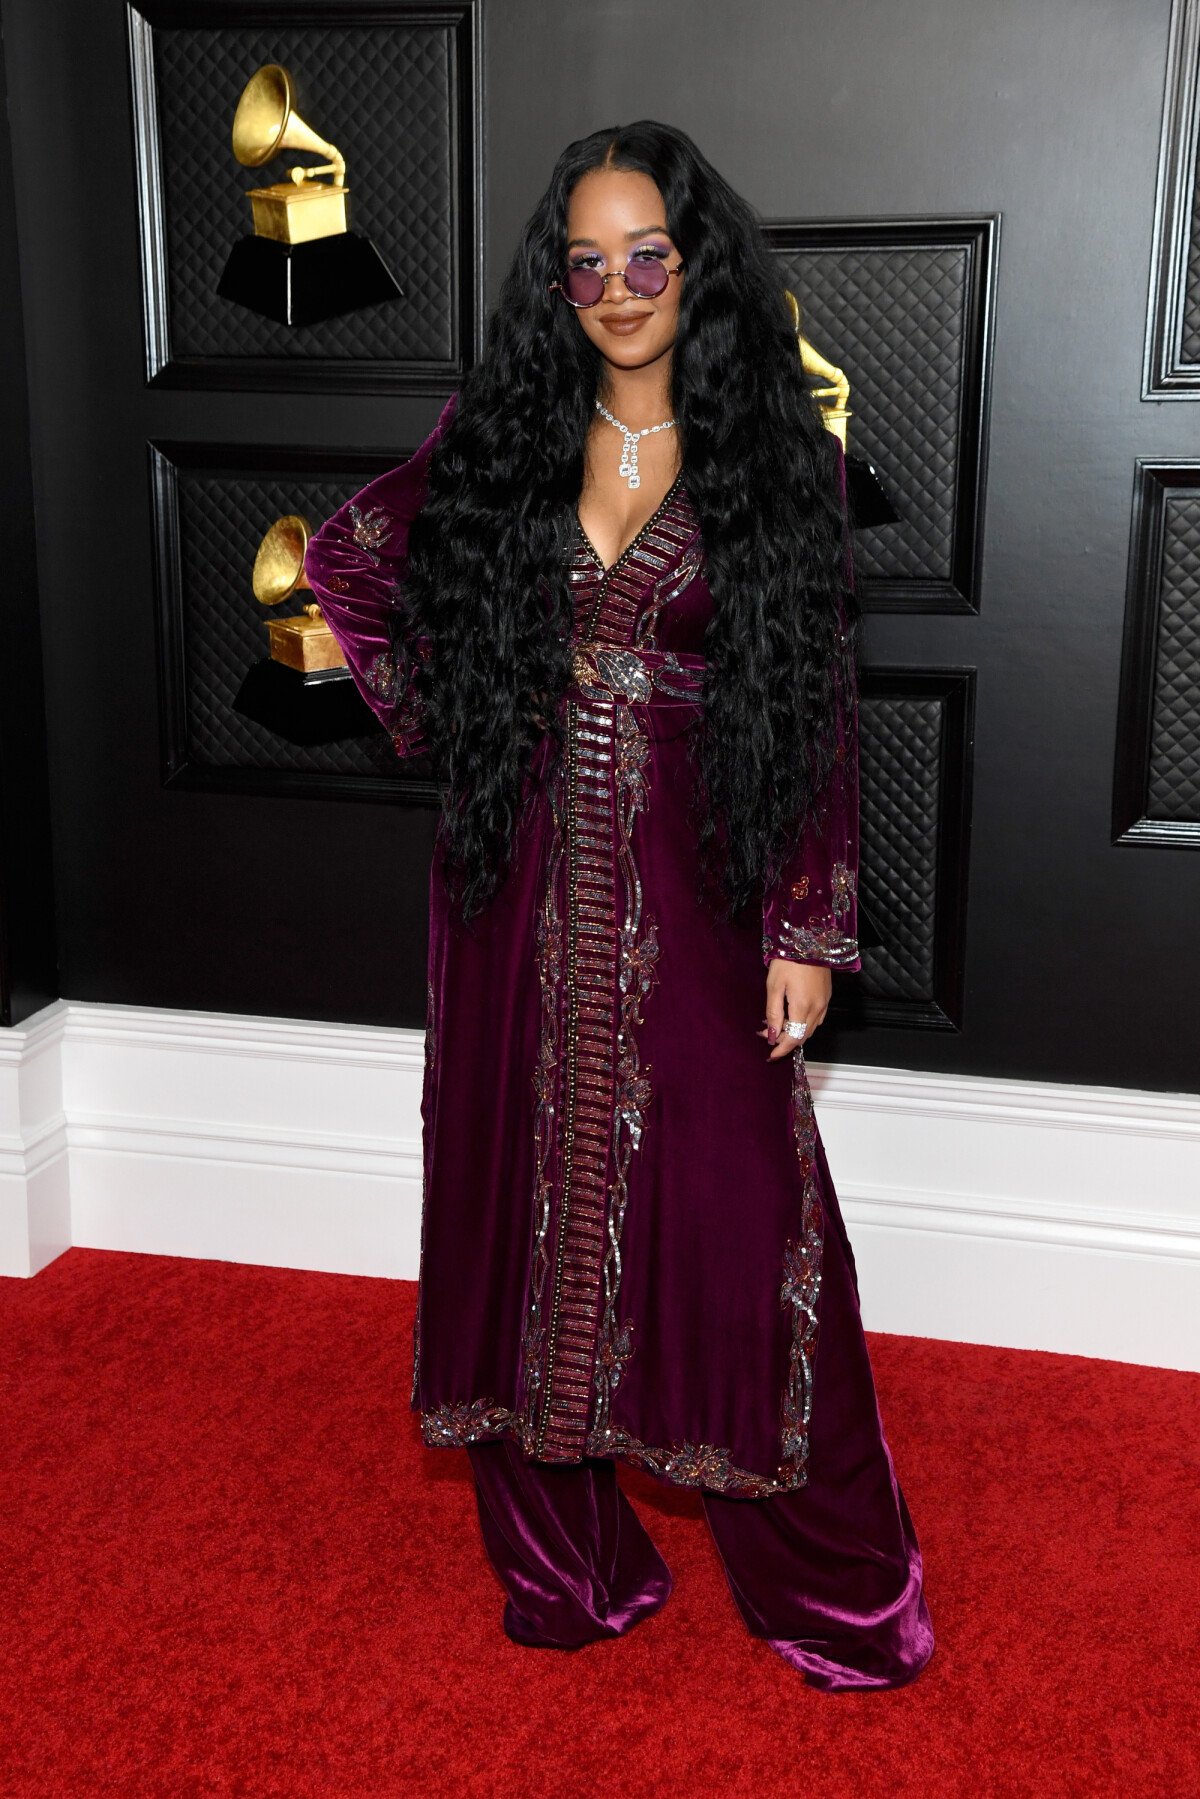 Vestidos, brilho, decotes e mais: os looks das famosas no Grammy 2021 -  Purepeople